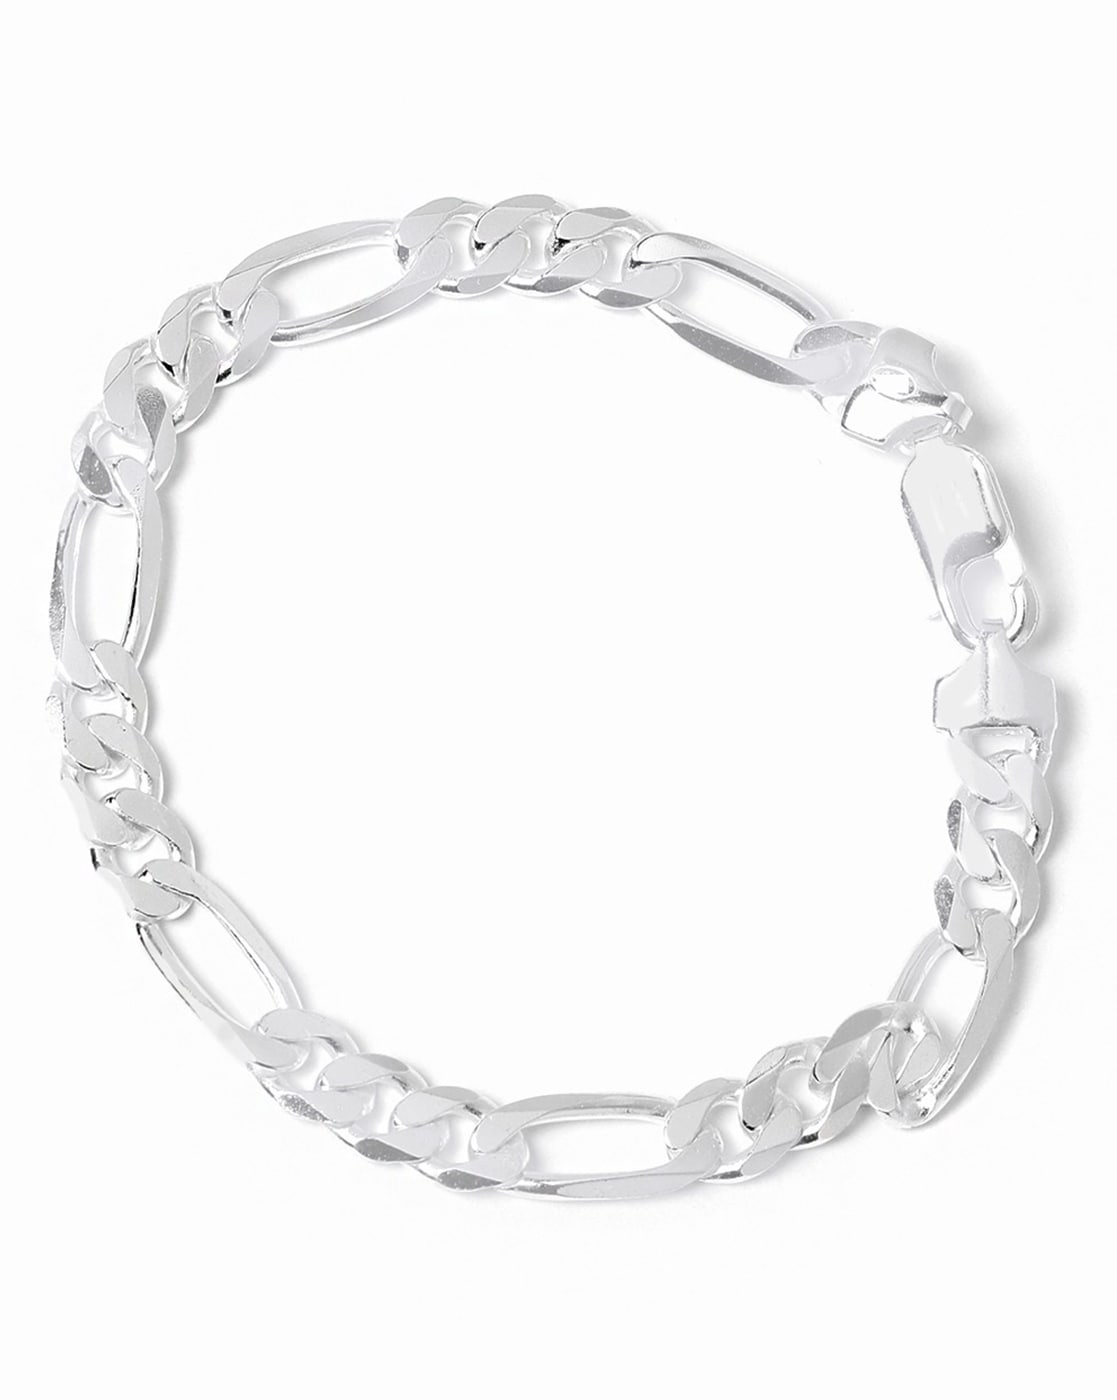 Buy Silver Bracelets  Kadas for Men by Oomph Online  Ajiocom